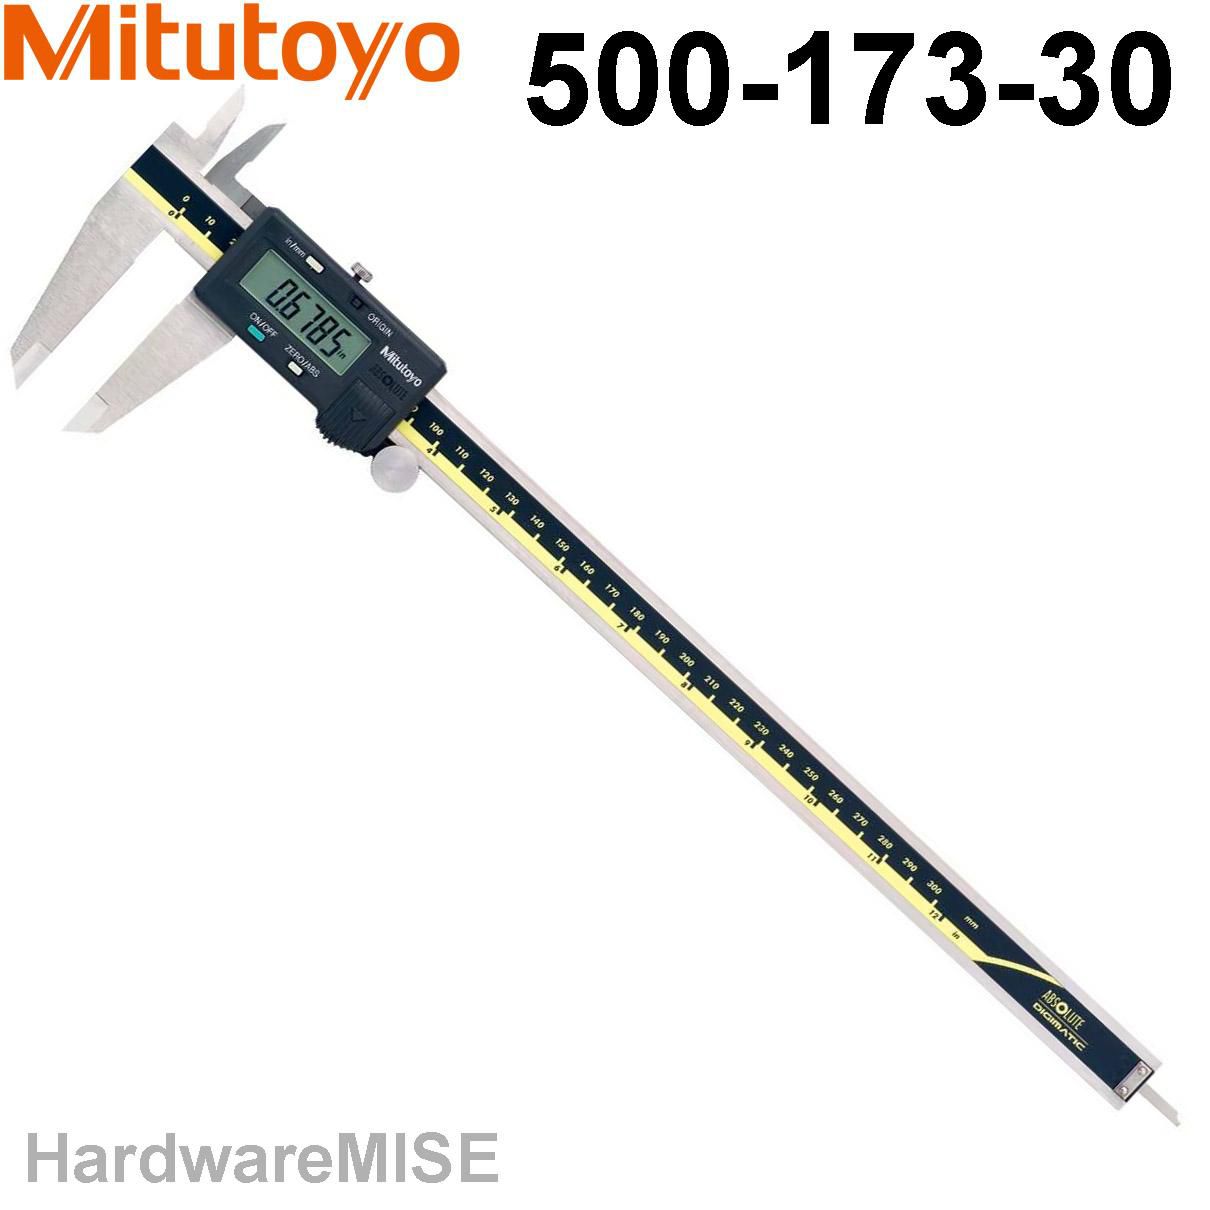 Mitutoyo Digimatic Caliper 500-173-30 Digital c/w SPC Output